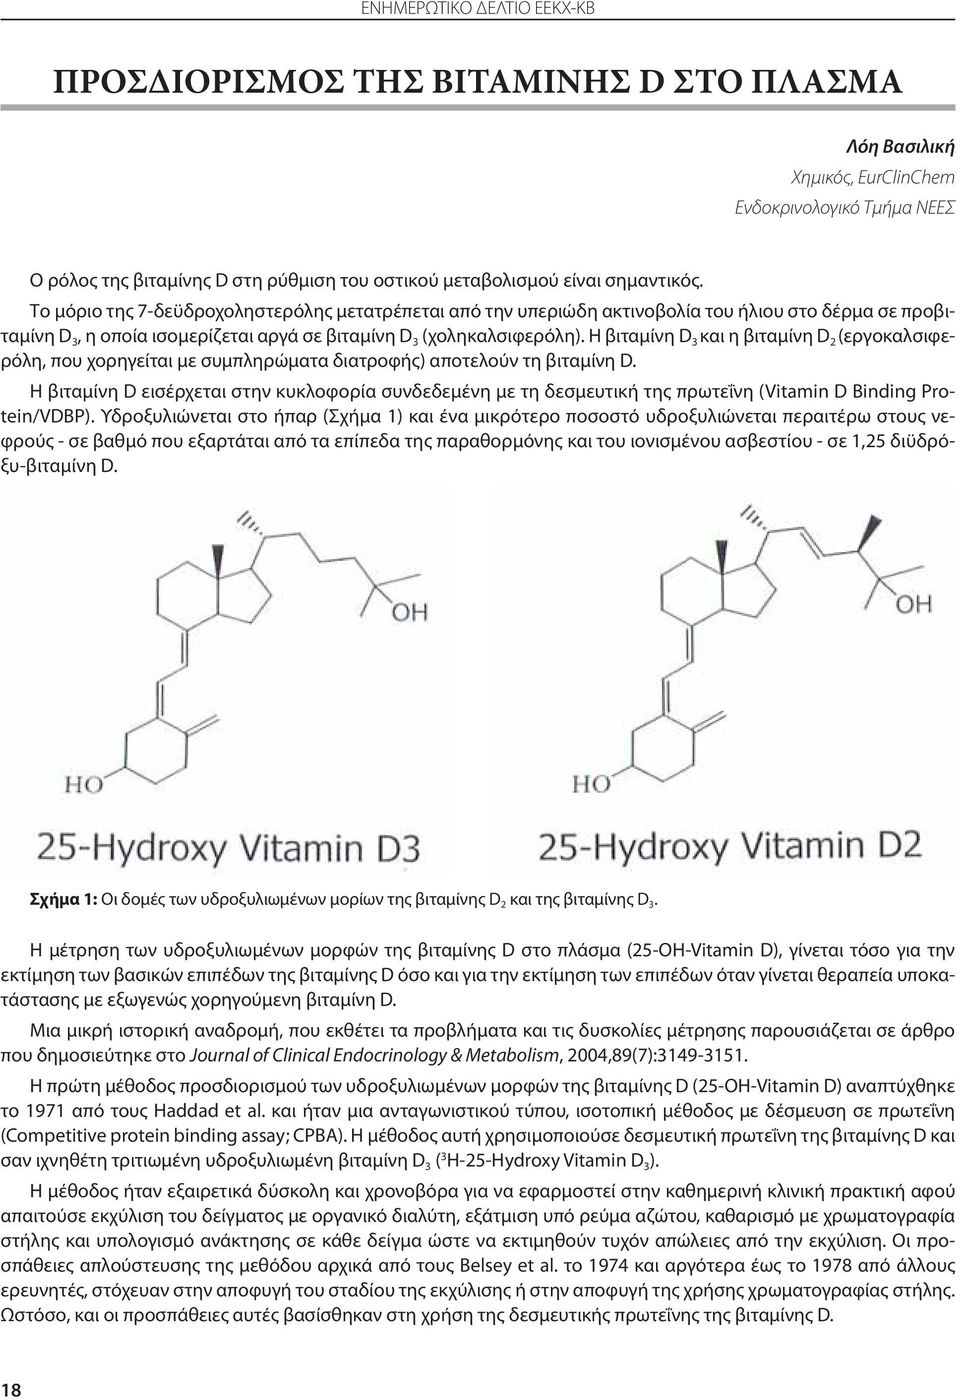 Η βιταμίνη D 3 και η βιταμίνη D 2 (εργοκαλσιφερόλη, που χορηγείται με συμπληρώματα διατροφής) αποτελούν τη βιταμίνη D.